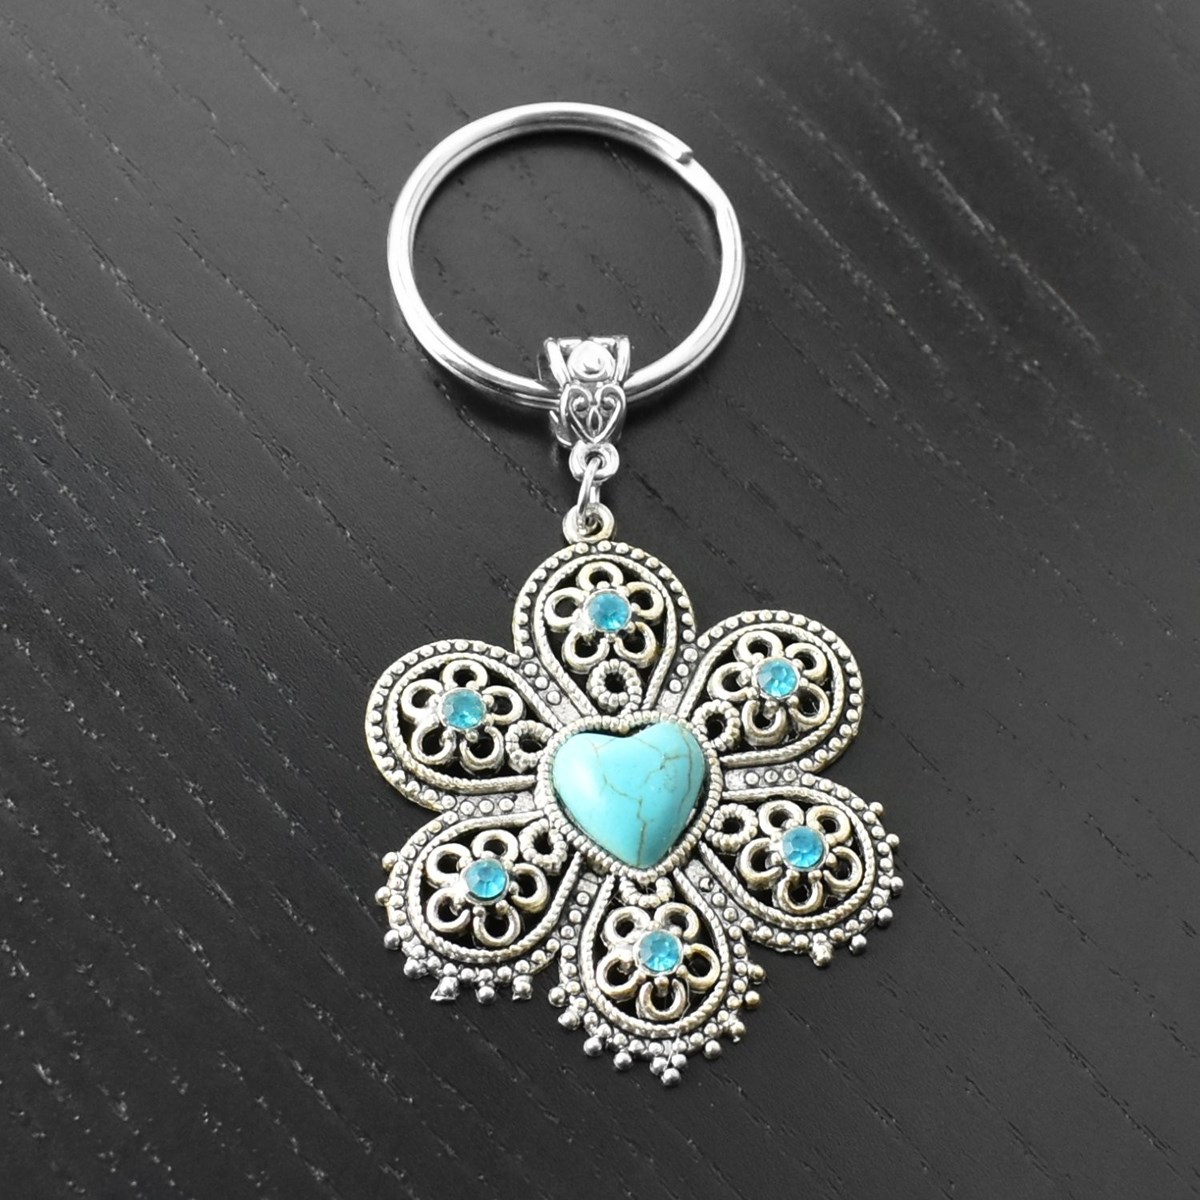 Porte-clés argenté fleur strass bleu turquoise - vue 4